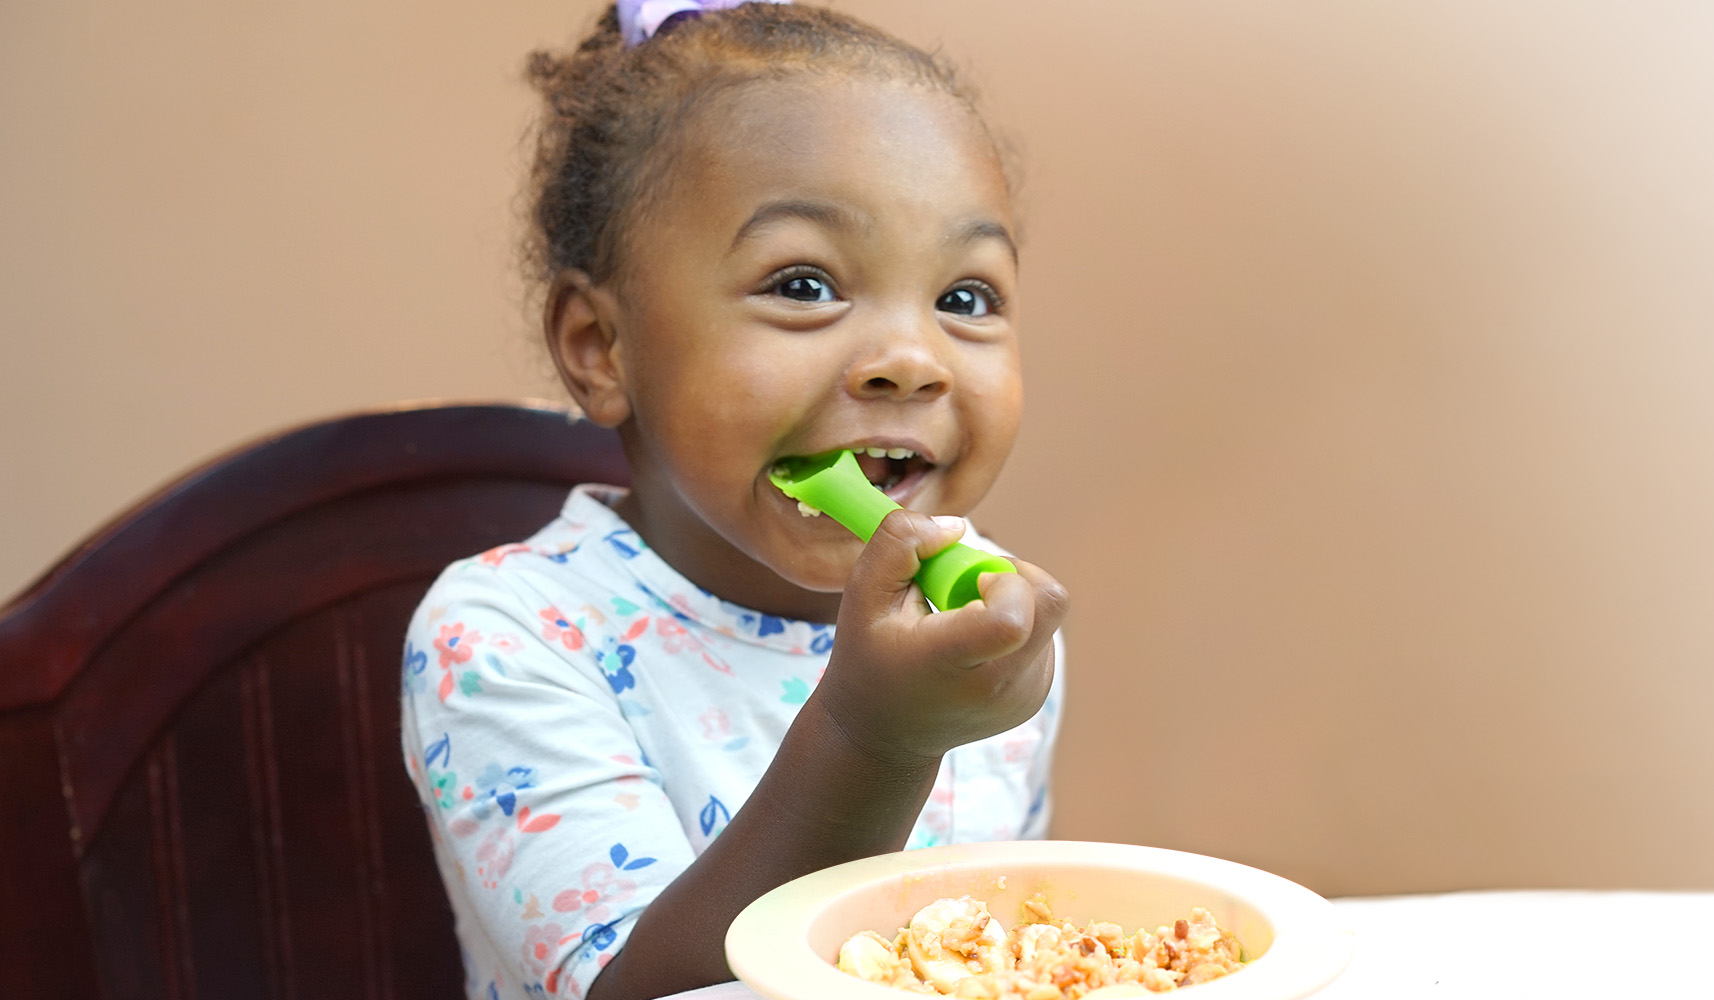 Un niño pequeño se sienta en una trona y come la comida de un plato con una  cuchara. utensilios de silicona para bebés para alimentar a los bebés